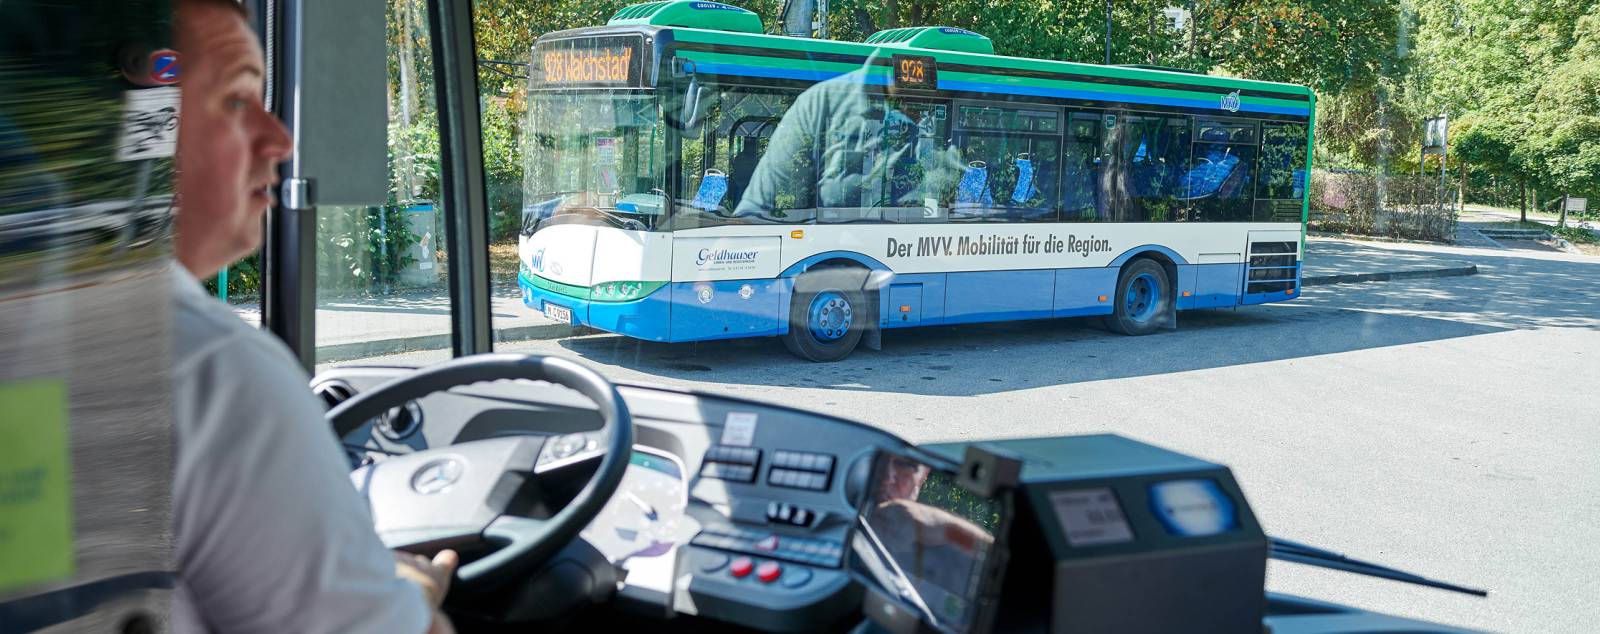 Bordtechnik - Echtzeit Anschlusssicherung auf Bus und Bahn | BusMATRIK